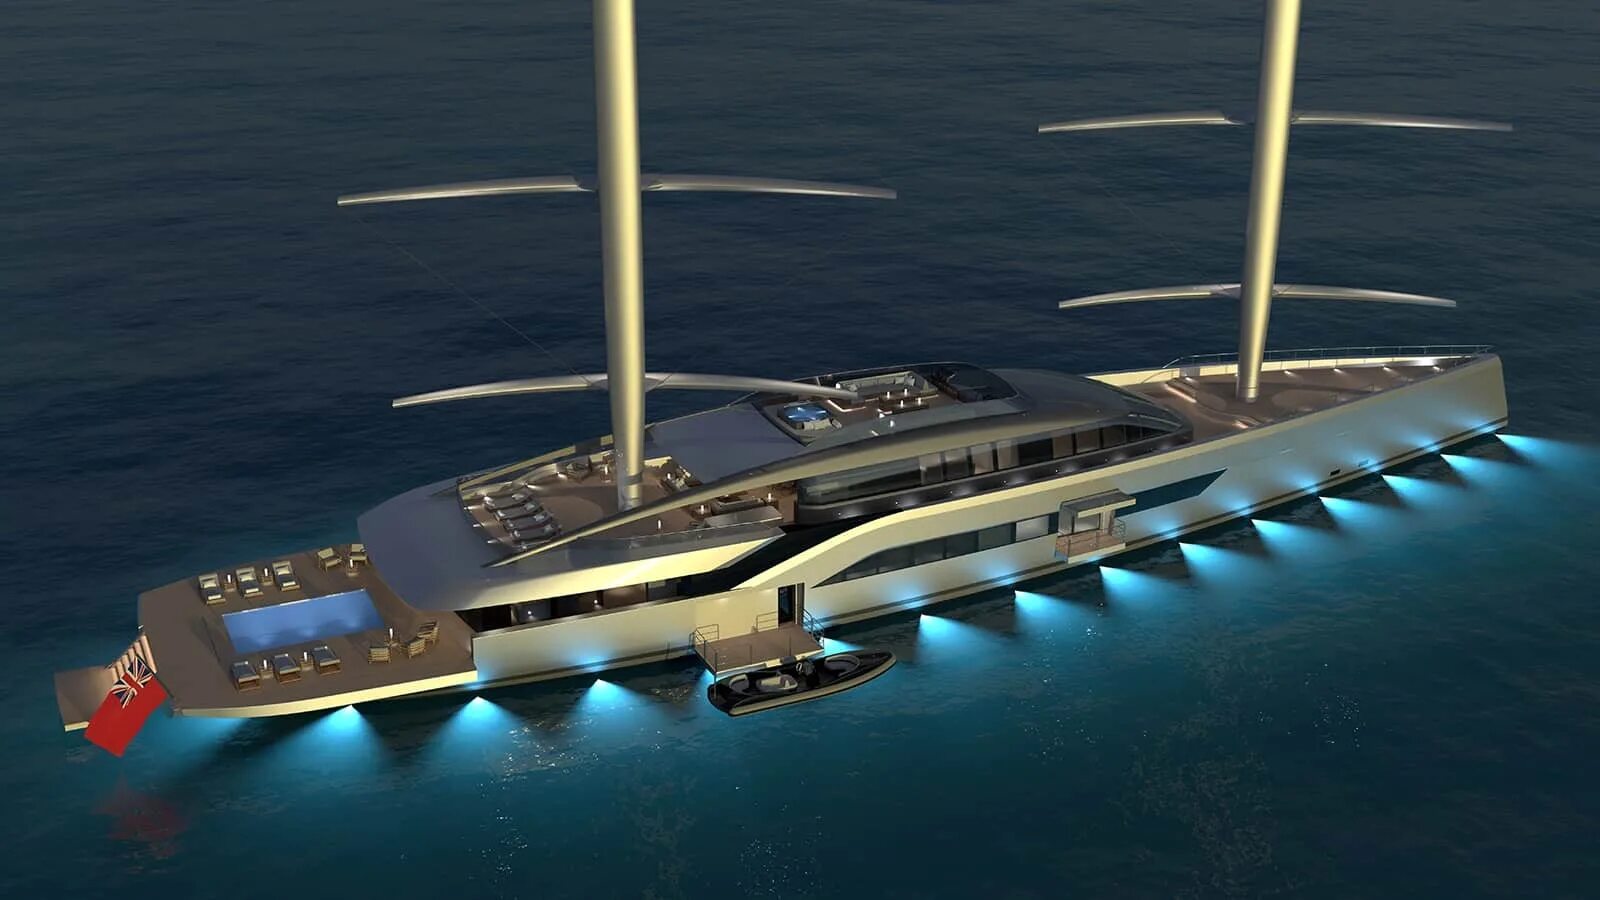 DYNARIG яхта. Концепт 150-метровой мегаяхты. Концепт яхты Hybrid 2021 Motor Yacht Concept от голландцев. Perini Navi 335 футов (102 м) Falcon Rig Superyacht. Гибрид саней и яхты 4